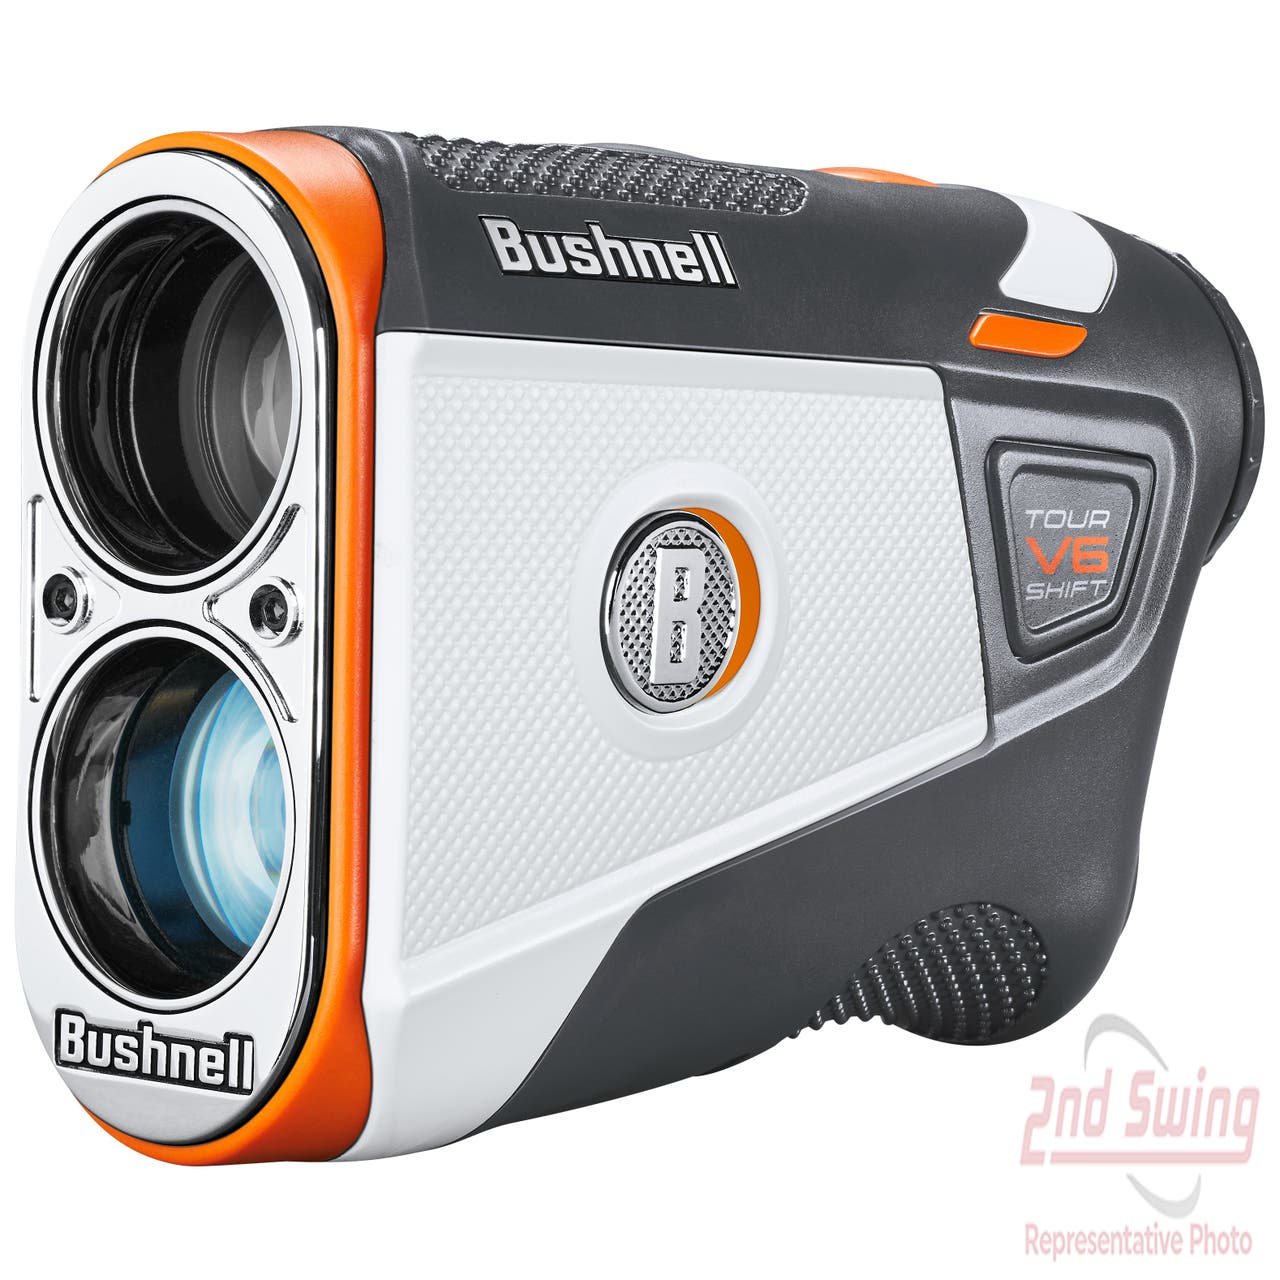 Bushnell Tour V6 Shift Golf GPS & Rangefinders